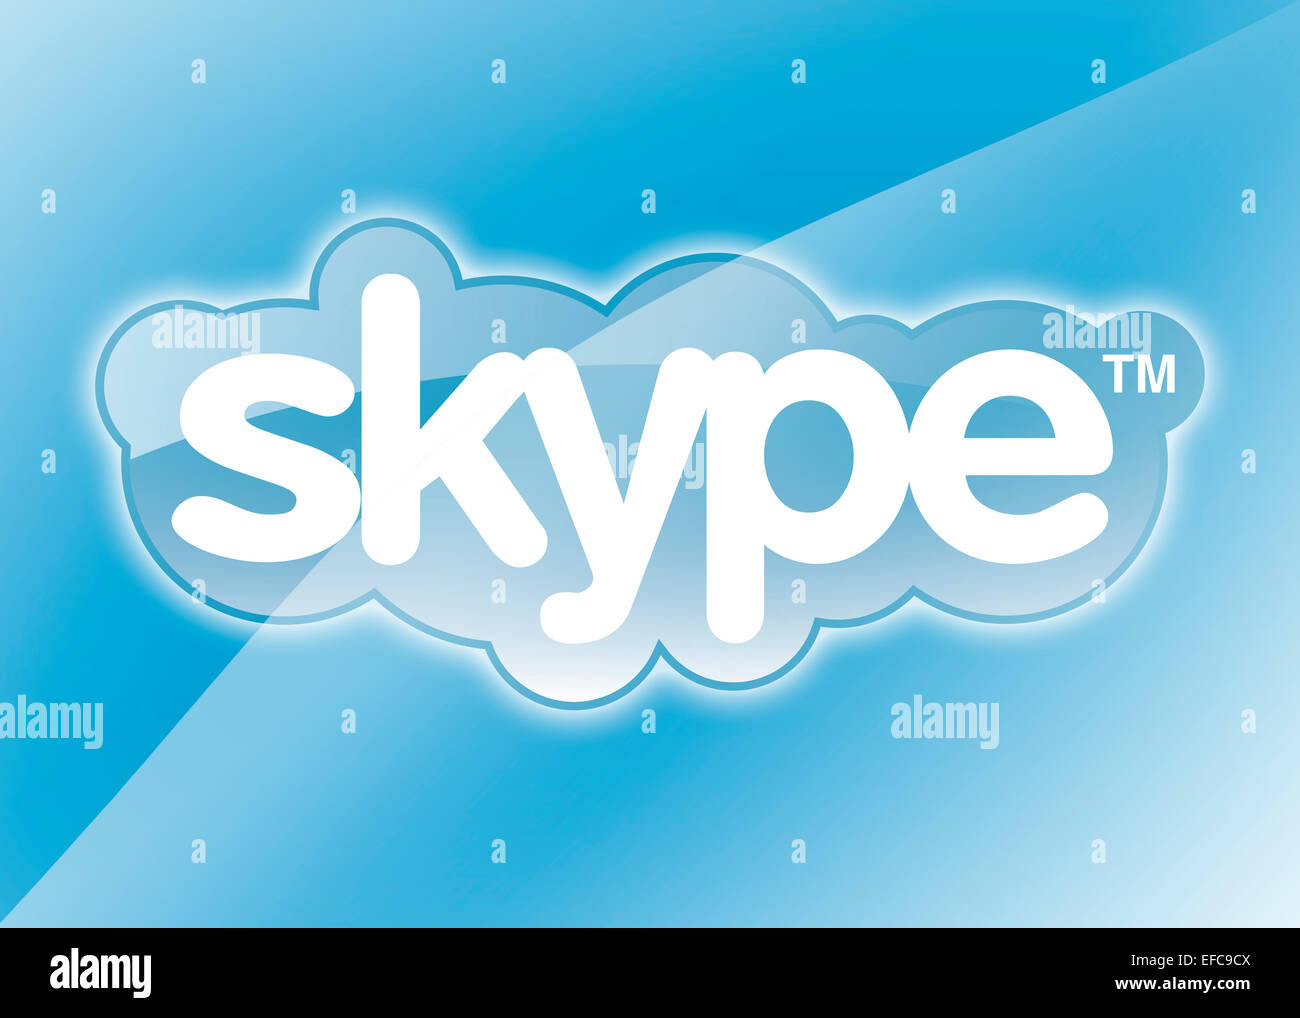 Skype logo icon symbol emblem flag Stock Photo